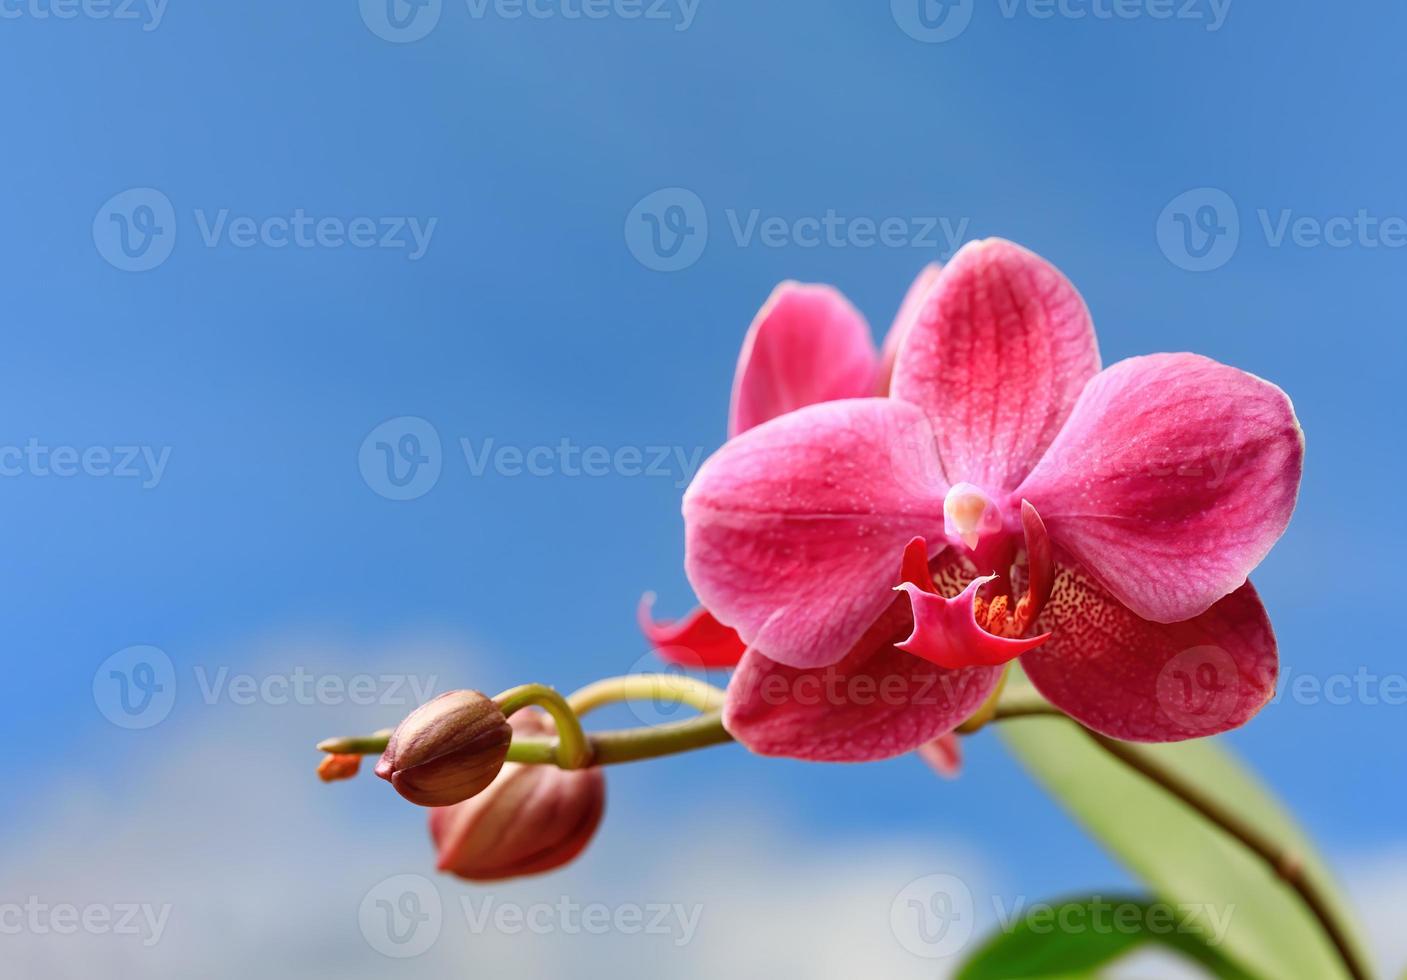 Cerca de la flor de la orquídea foto